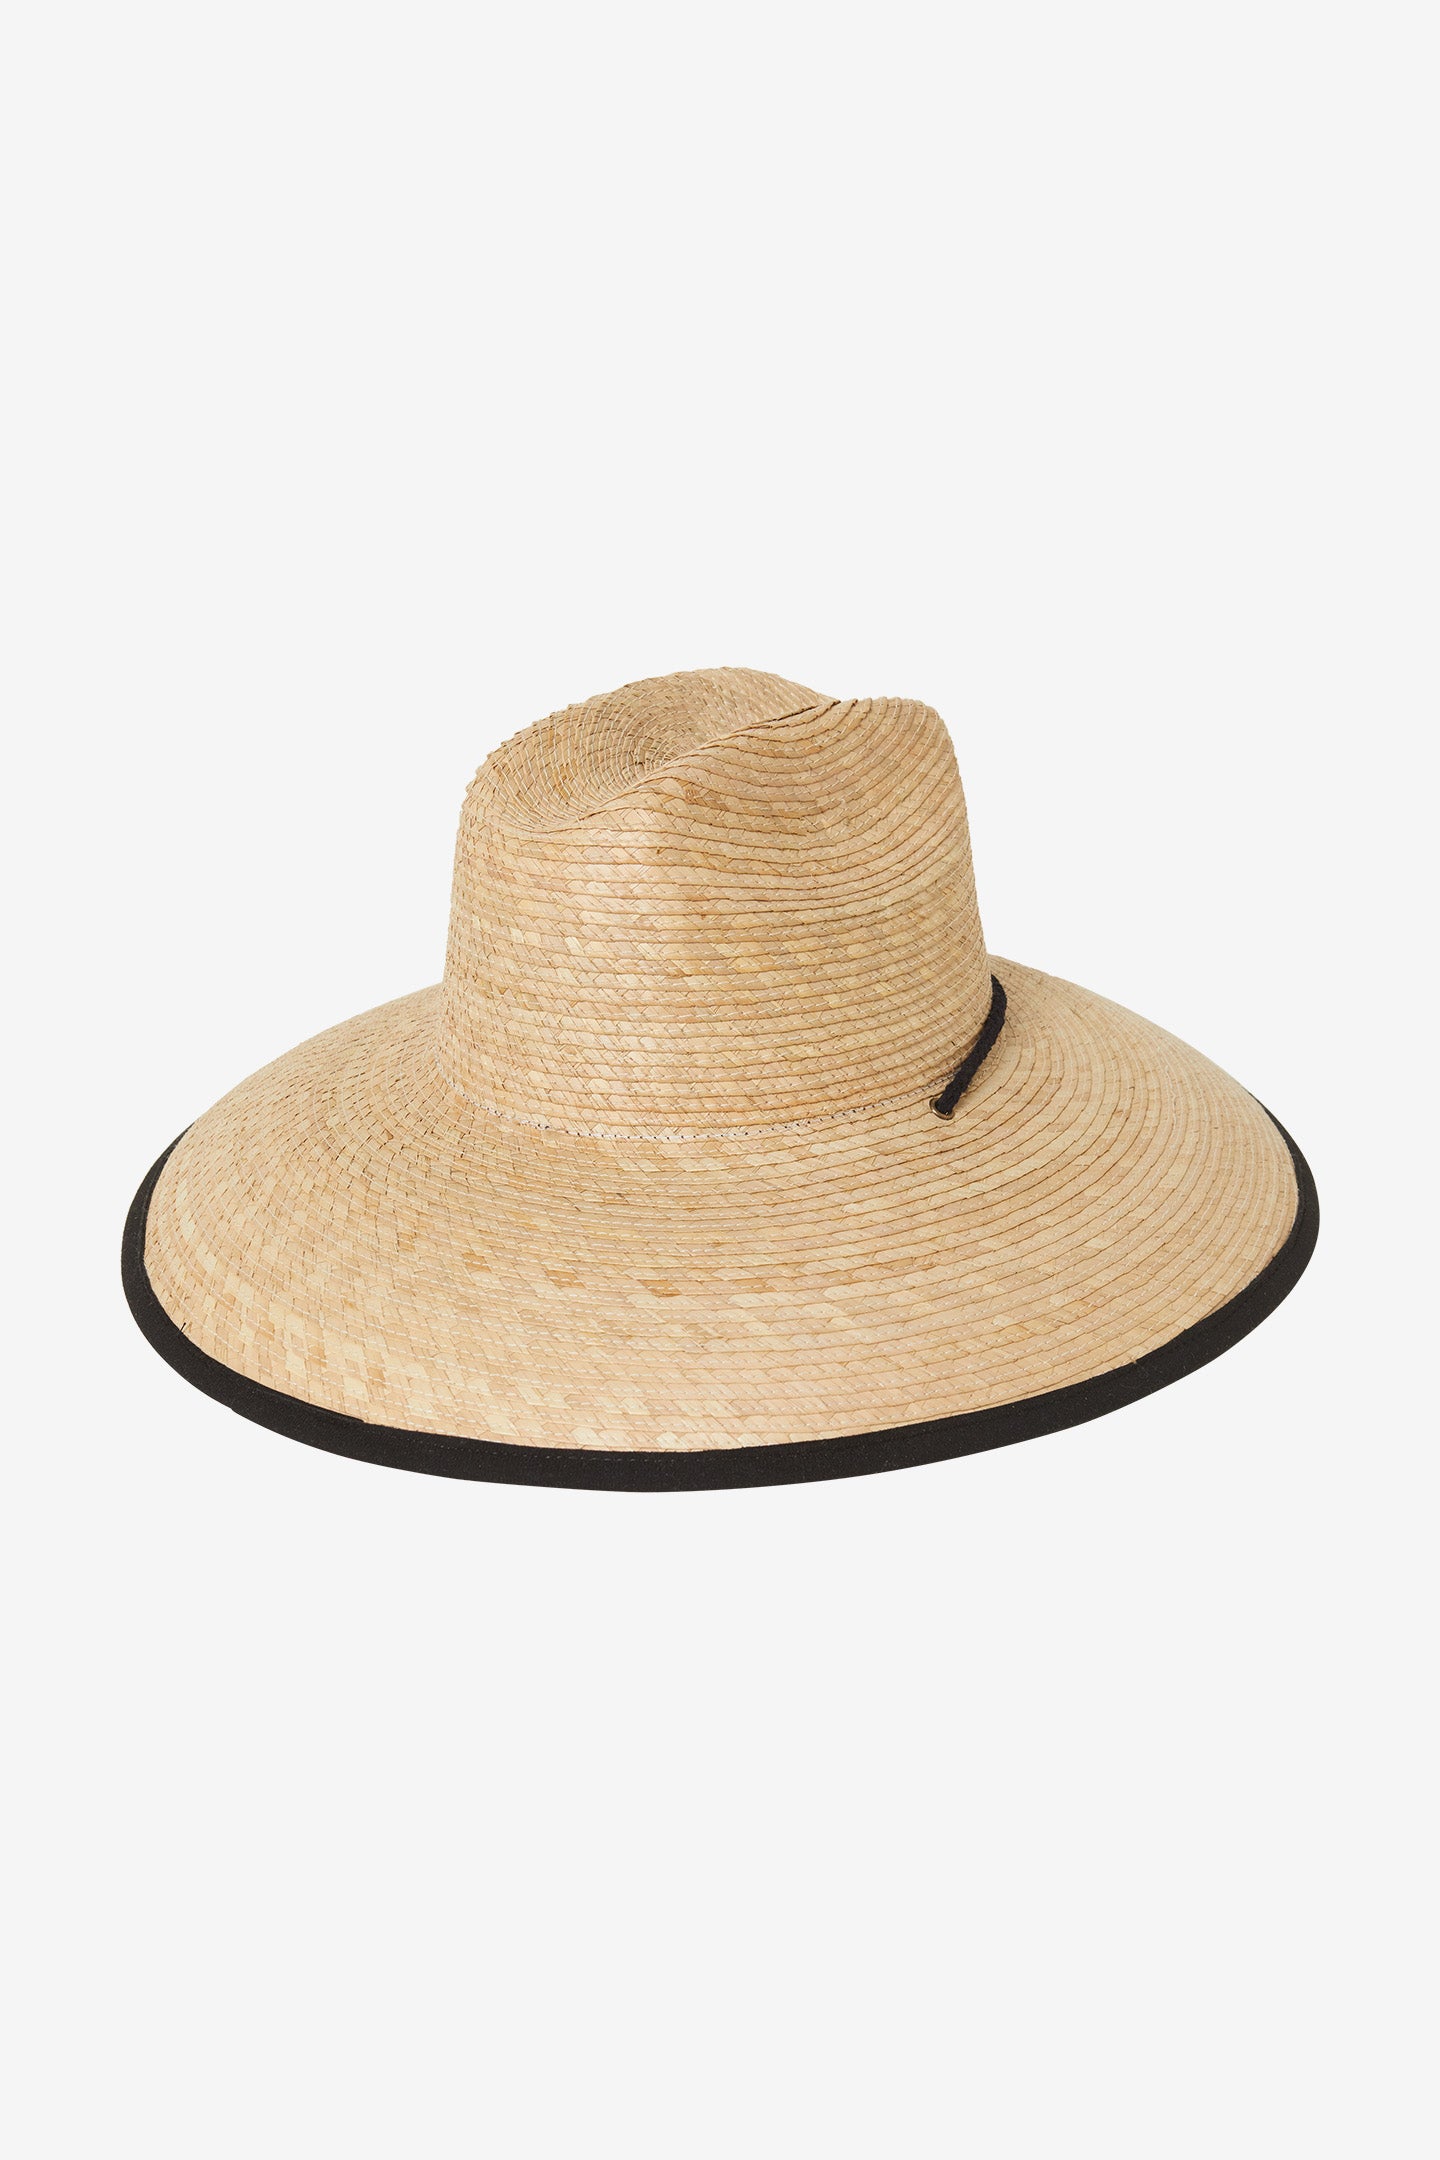 O'Neill Sonoma Trapea Hat - Size S/M, Natural